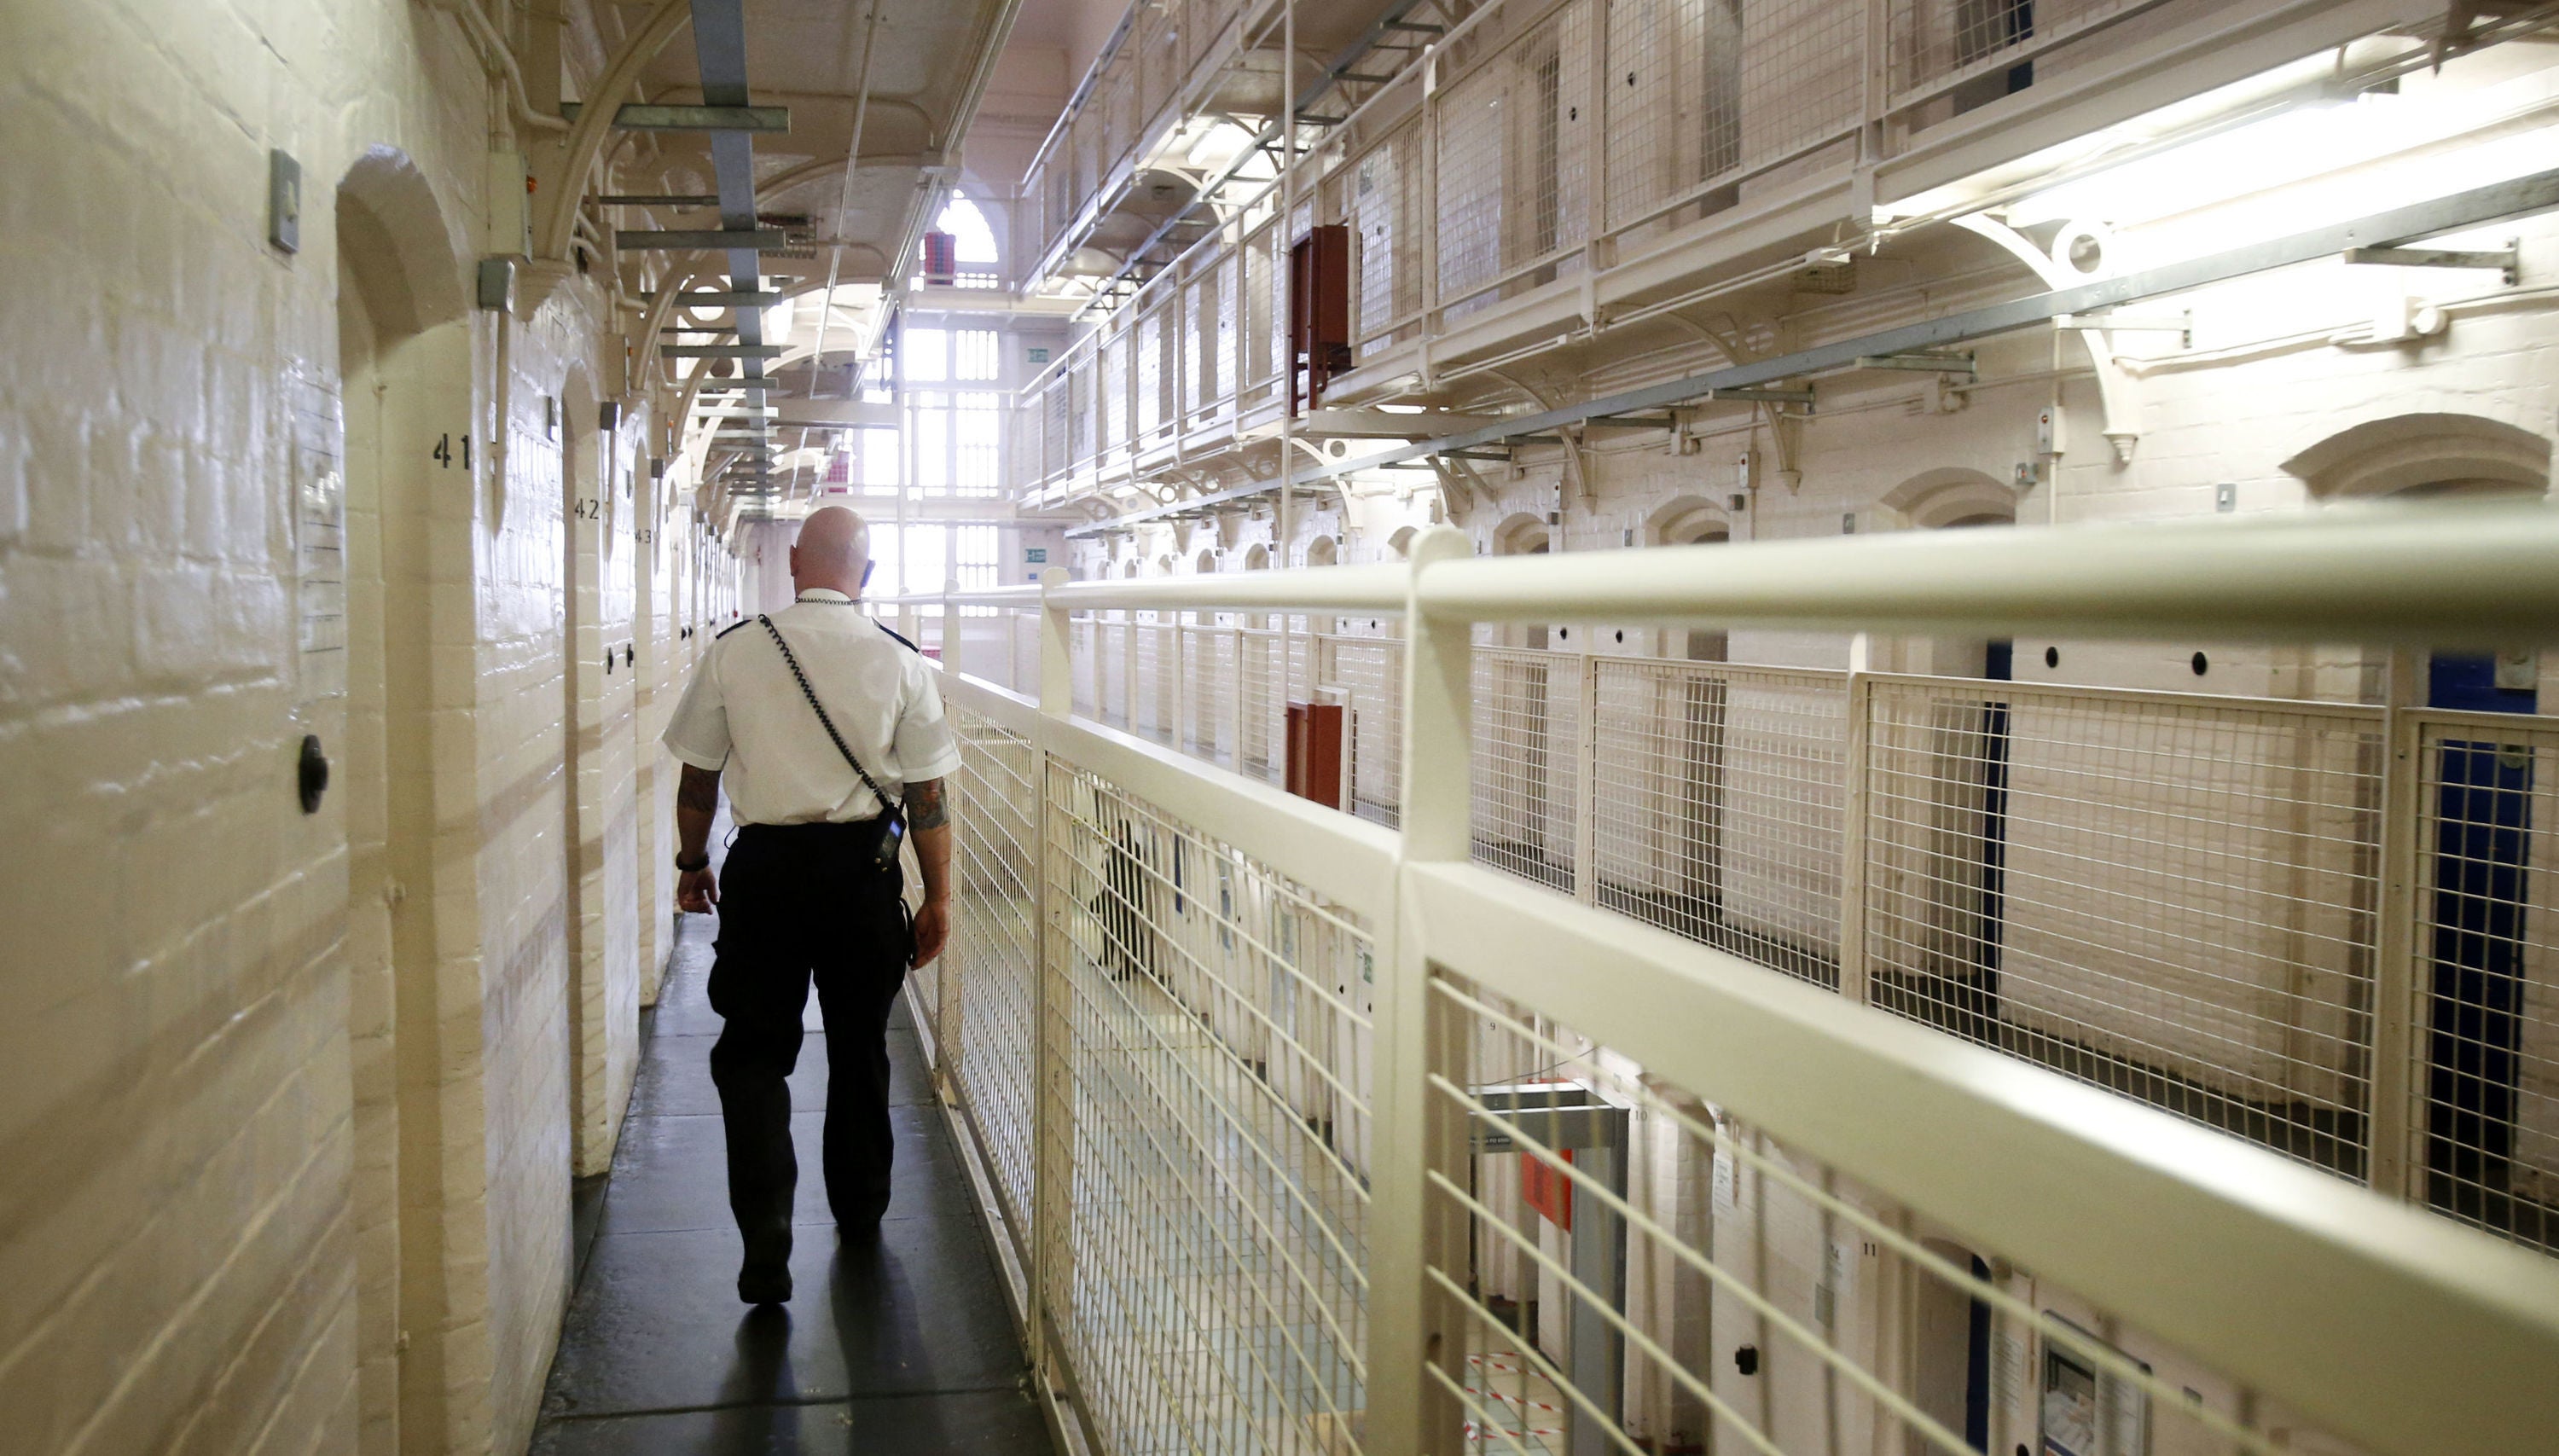 ‘Drug debts in prison get enforced by violence,’ Charlie Taylor warned